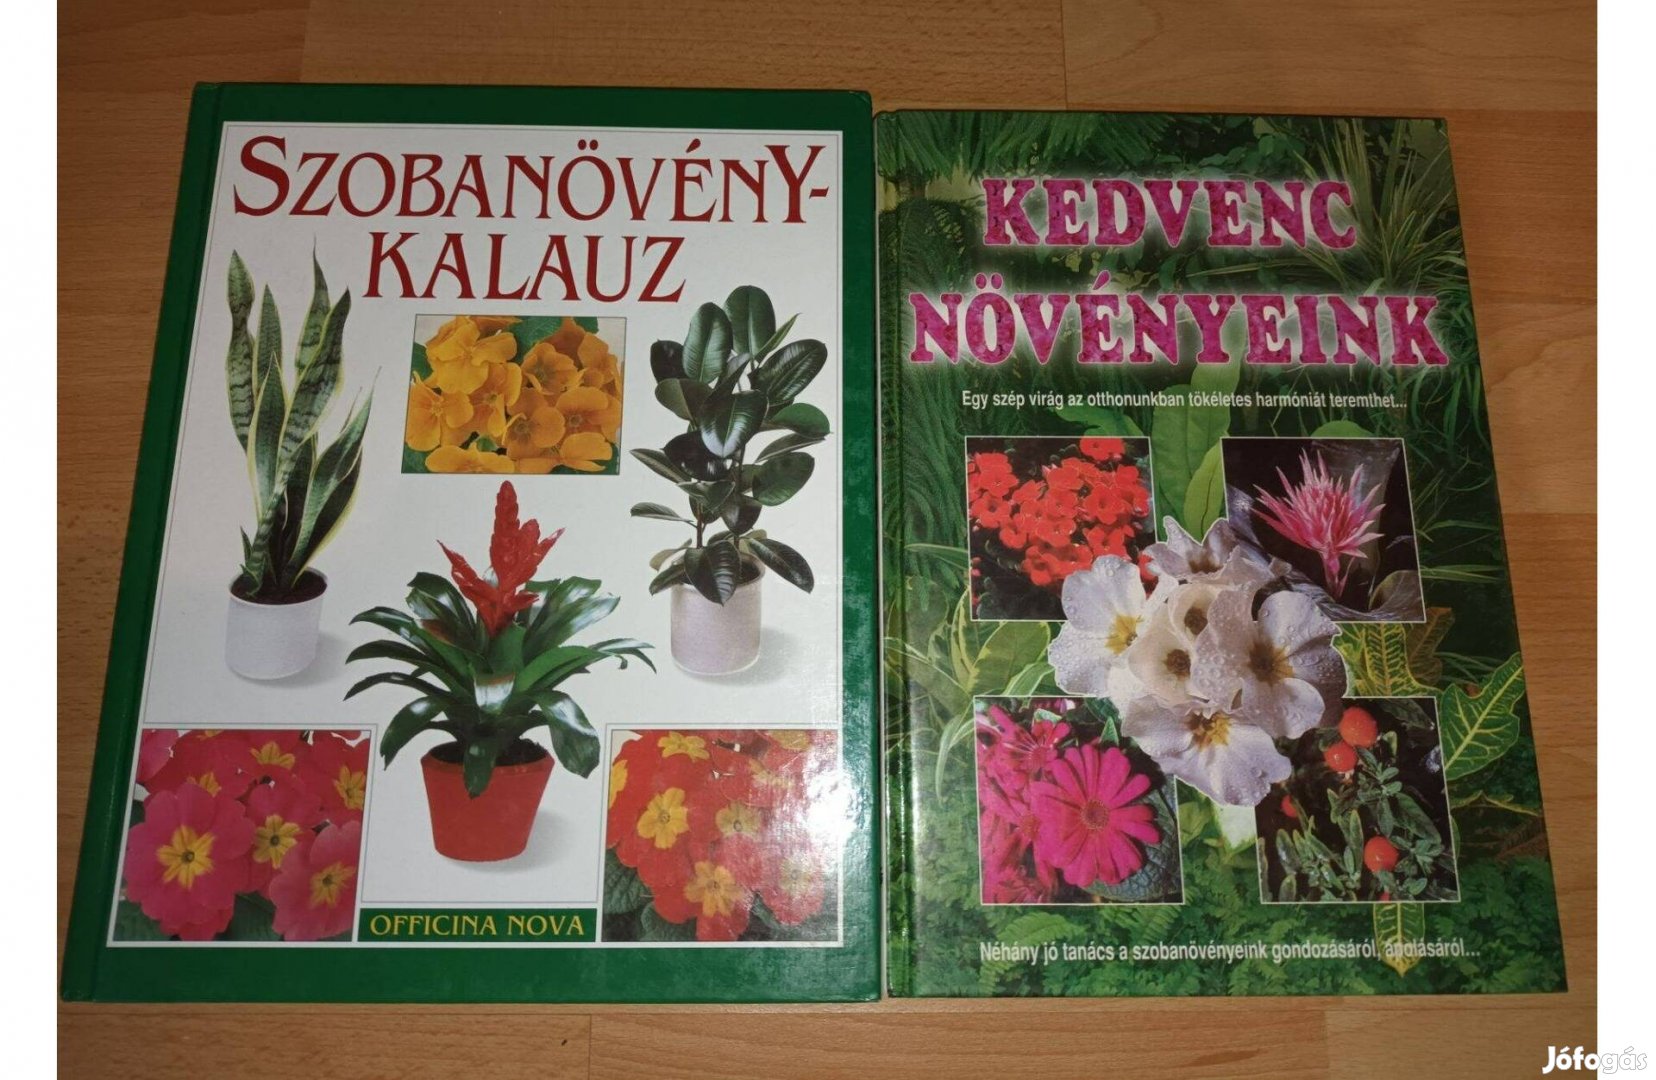 Szobanövény-kalauz & Kedvenc növényeink 2 db könyv